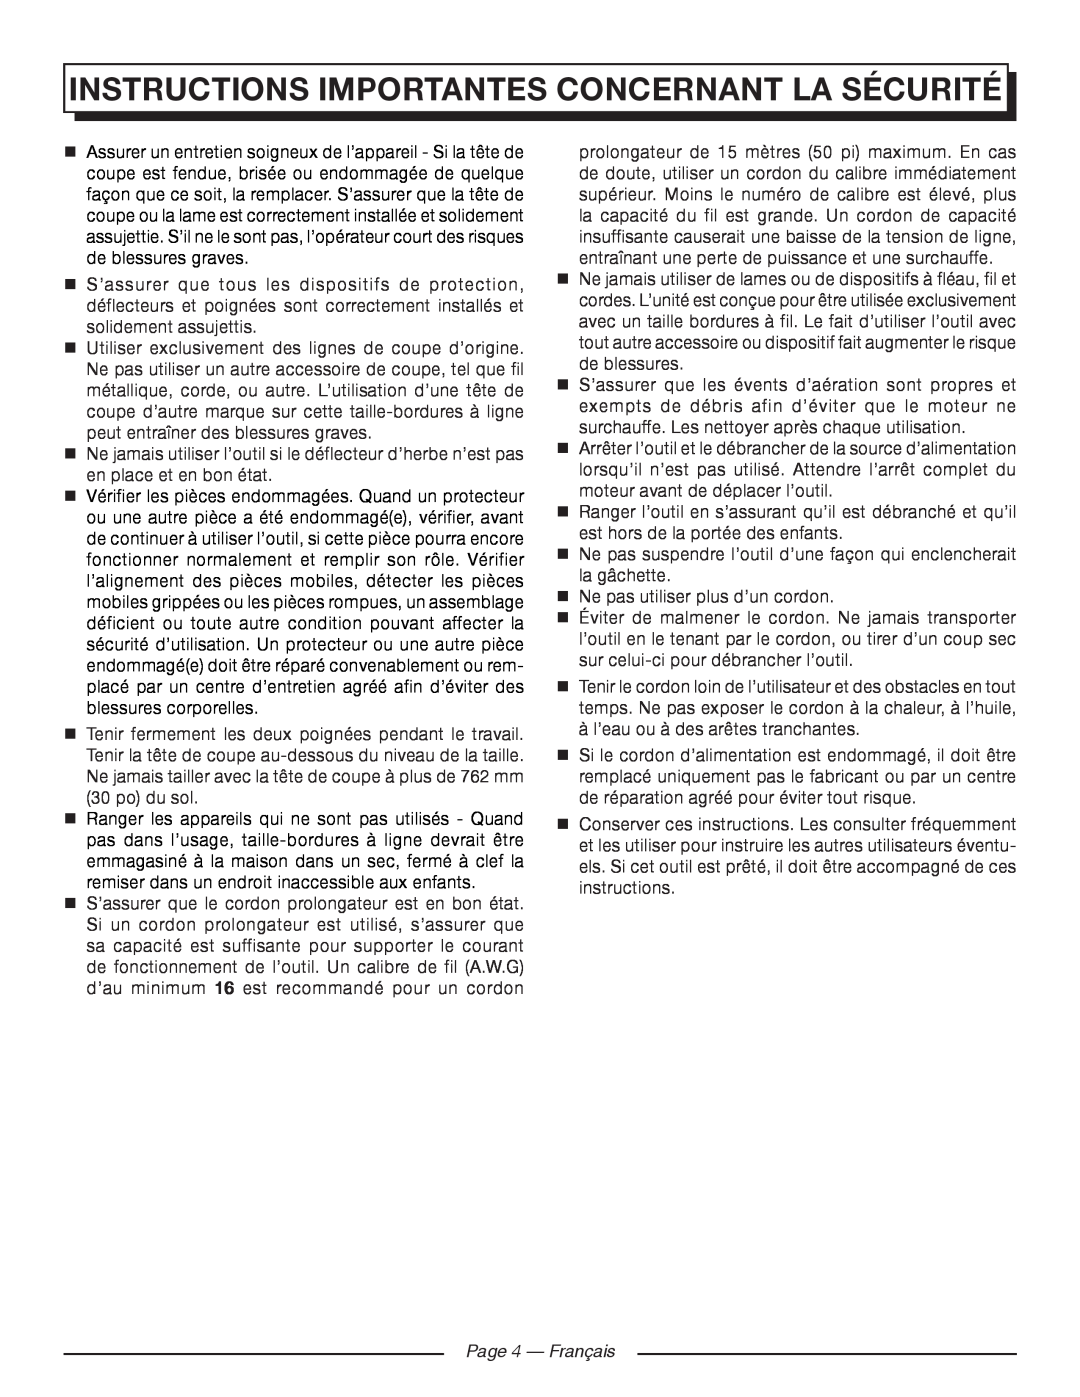 Homelite UT41120 manuel dutilisation Page 4 - Français, Instructions Importantes Concernant La Sécurité 